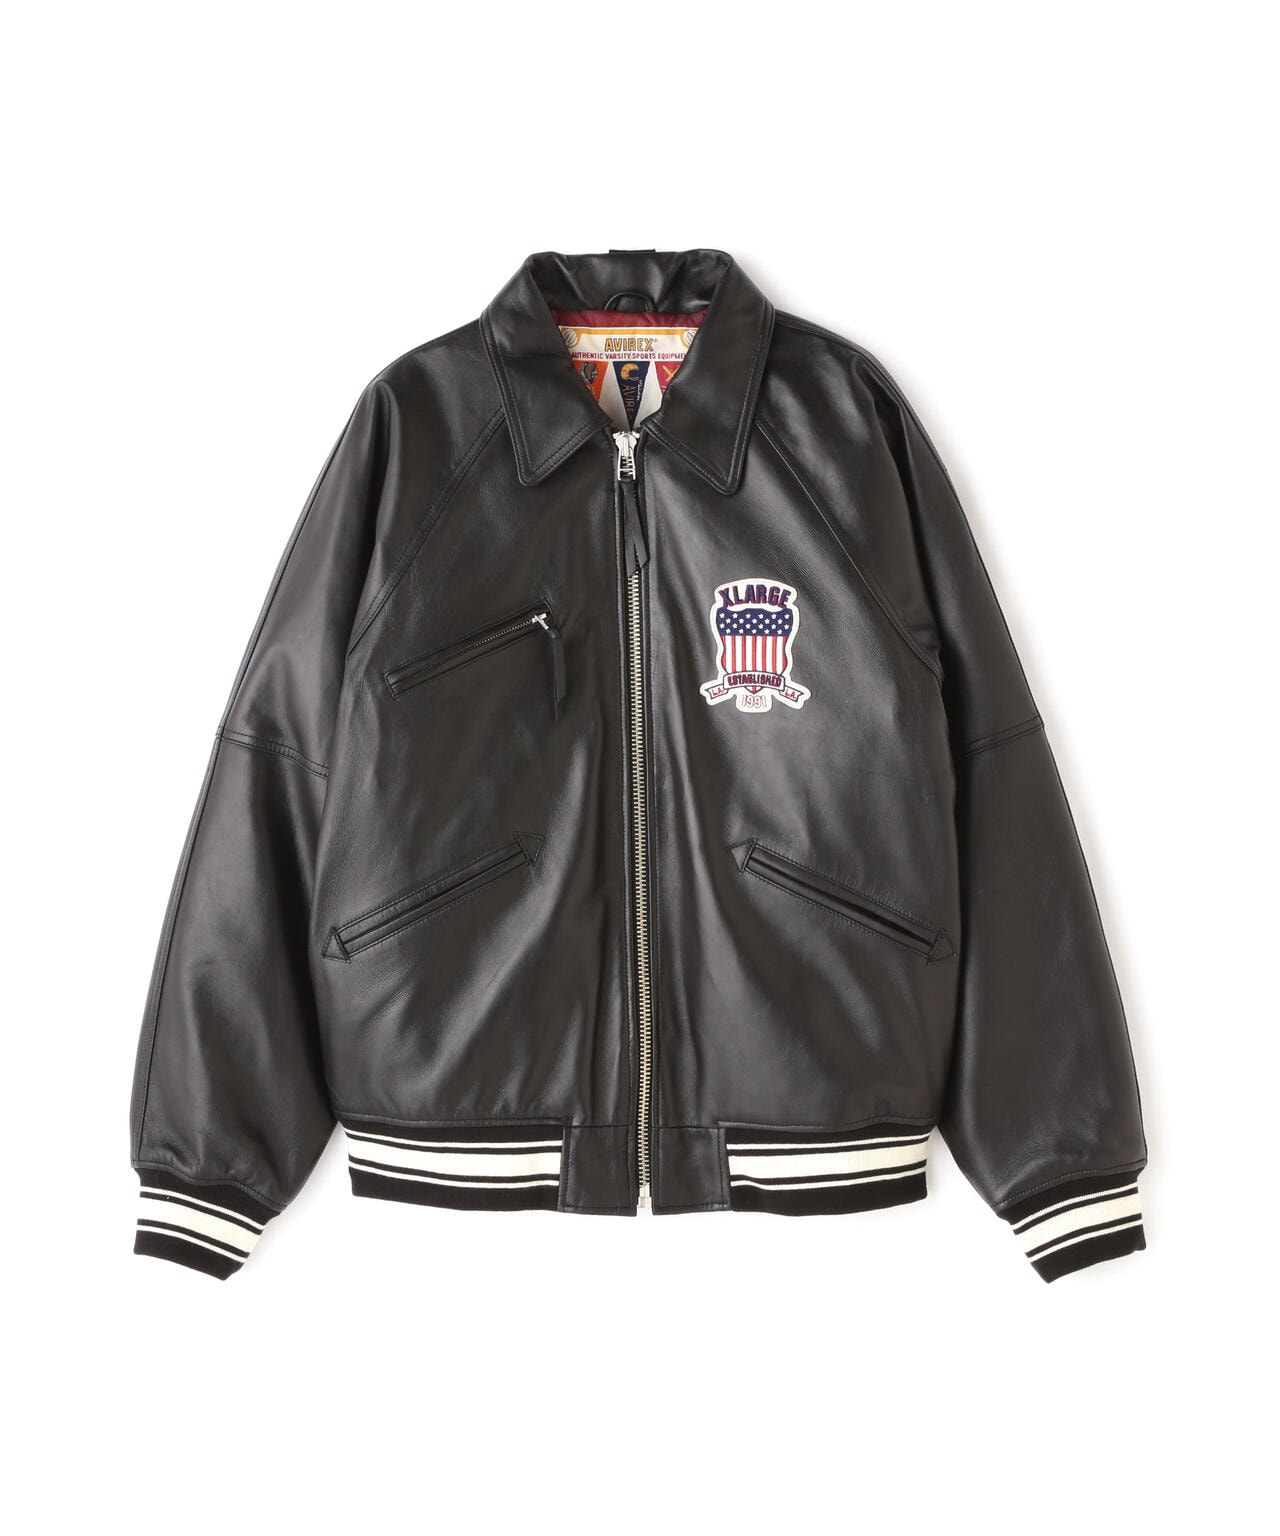 16,080円AVIREX Varsity Sport Logo Leather Jacket